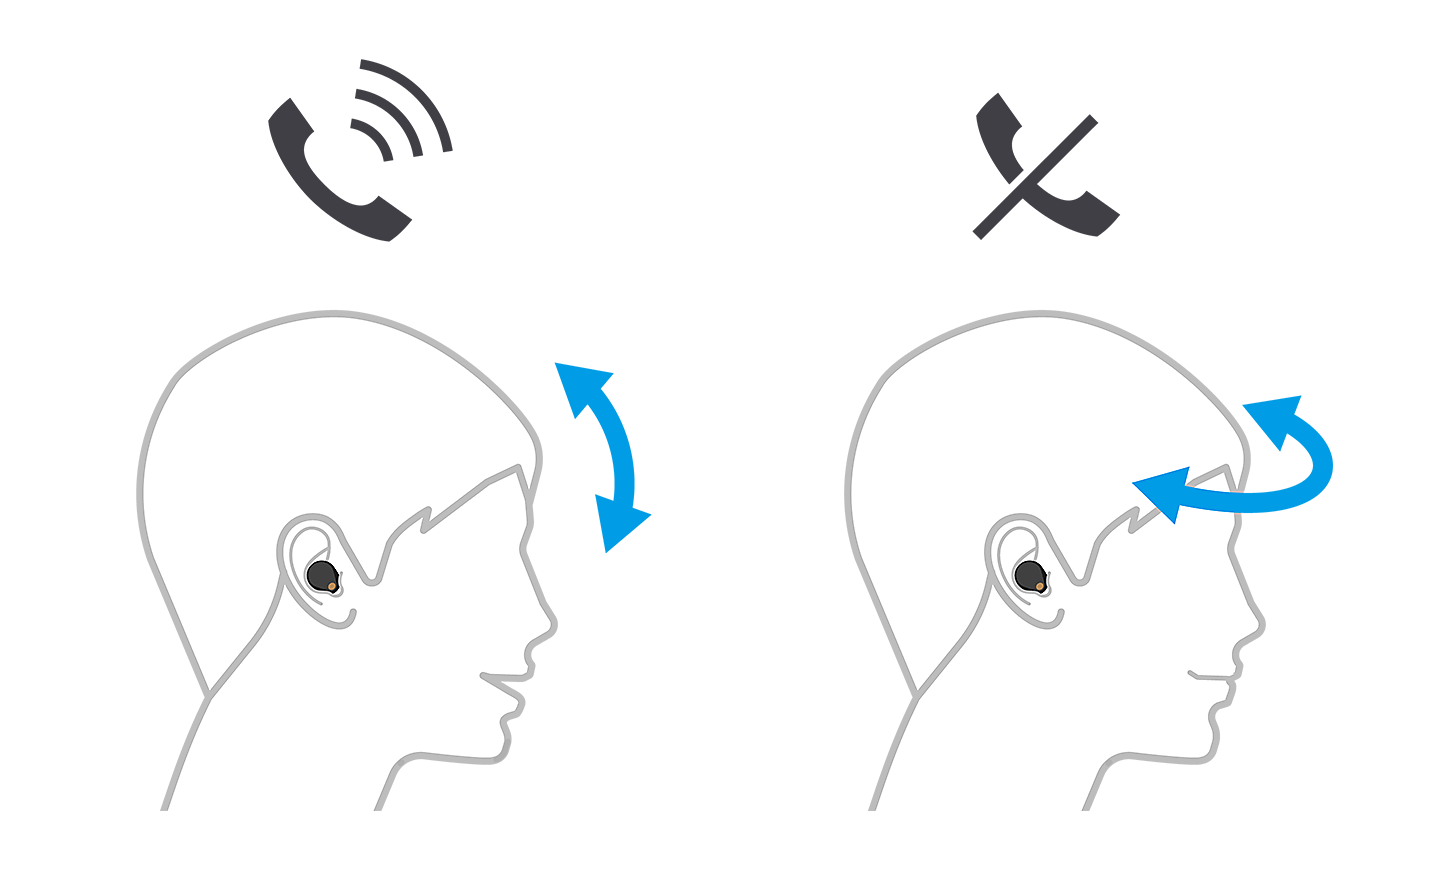 Bild von zwei Köpfen, der linke mit Pfeilen nach oben und unten nimmt einen Anruf an, der rechte mit Pfeilen von links nach rechts lehnt ihn ab